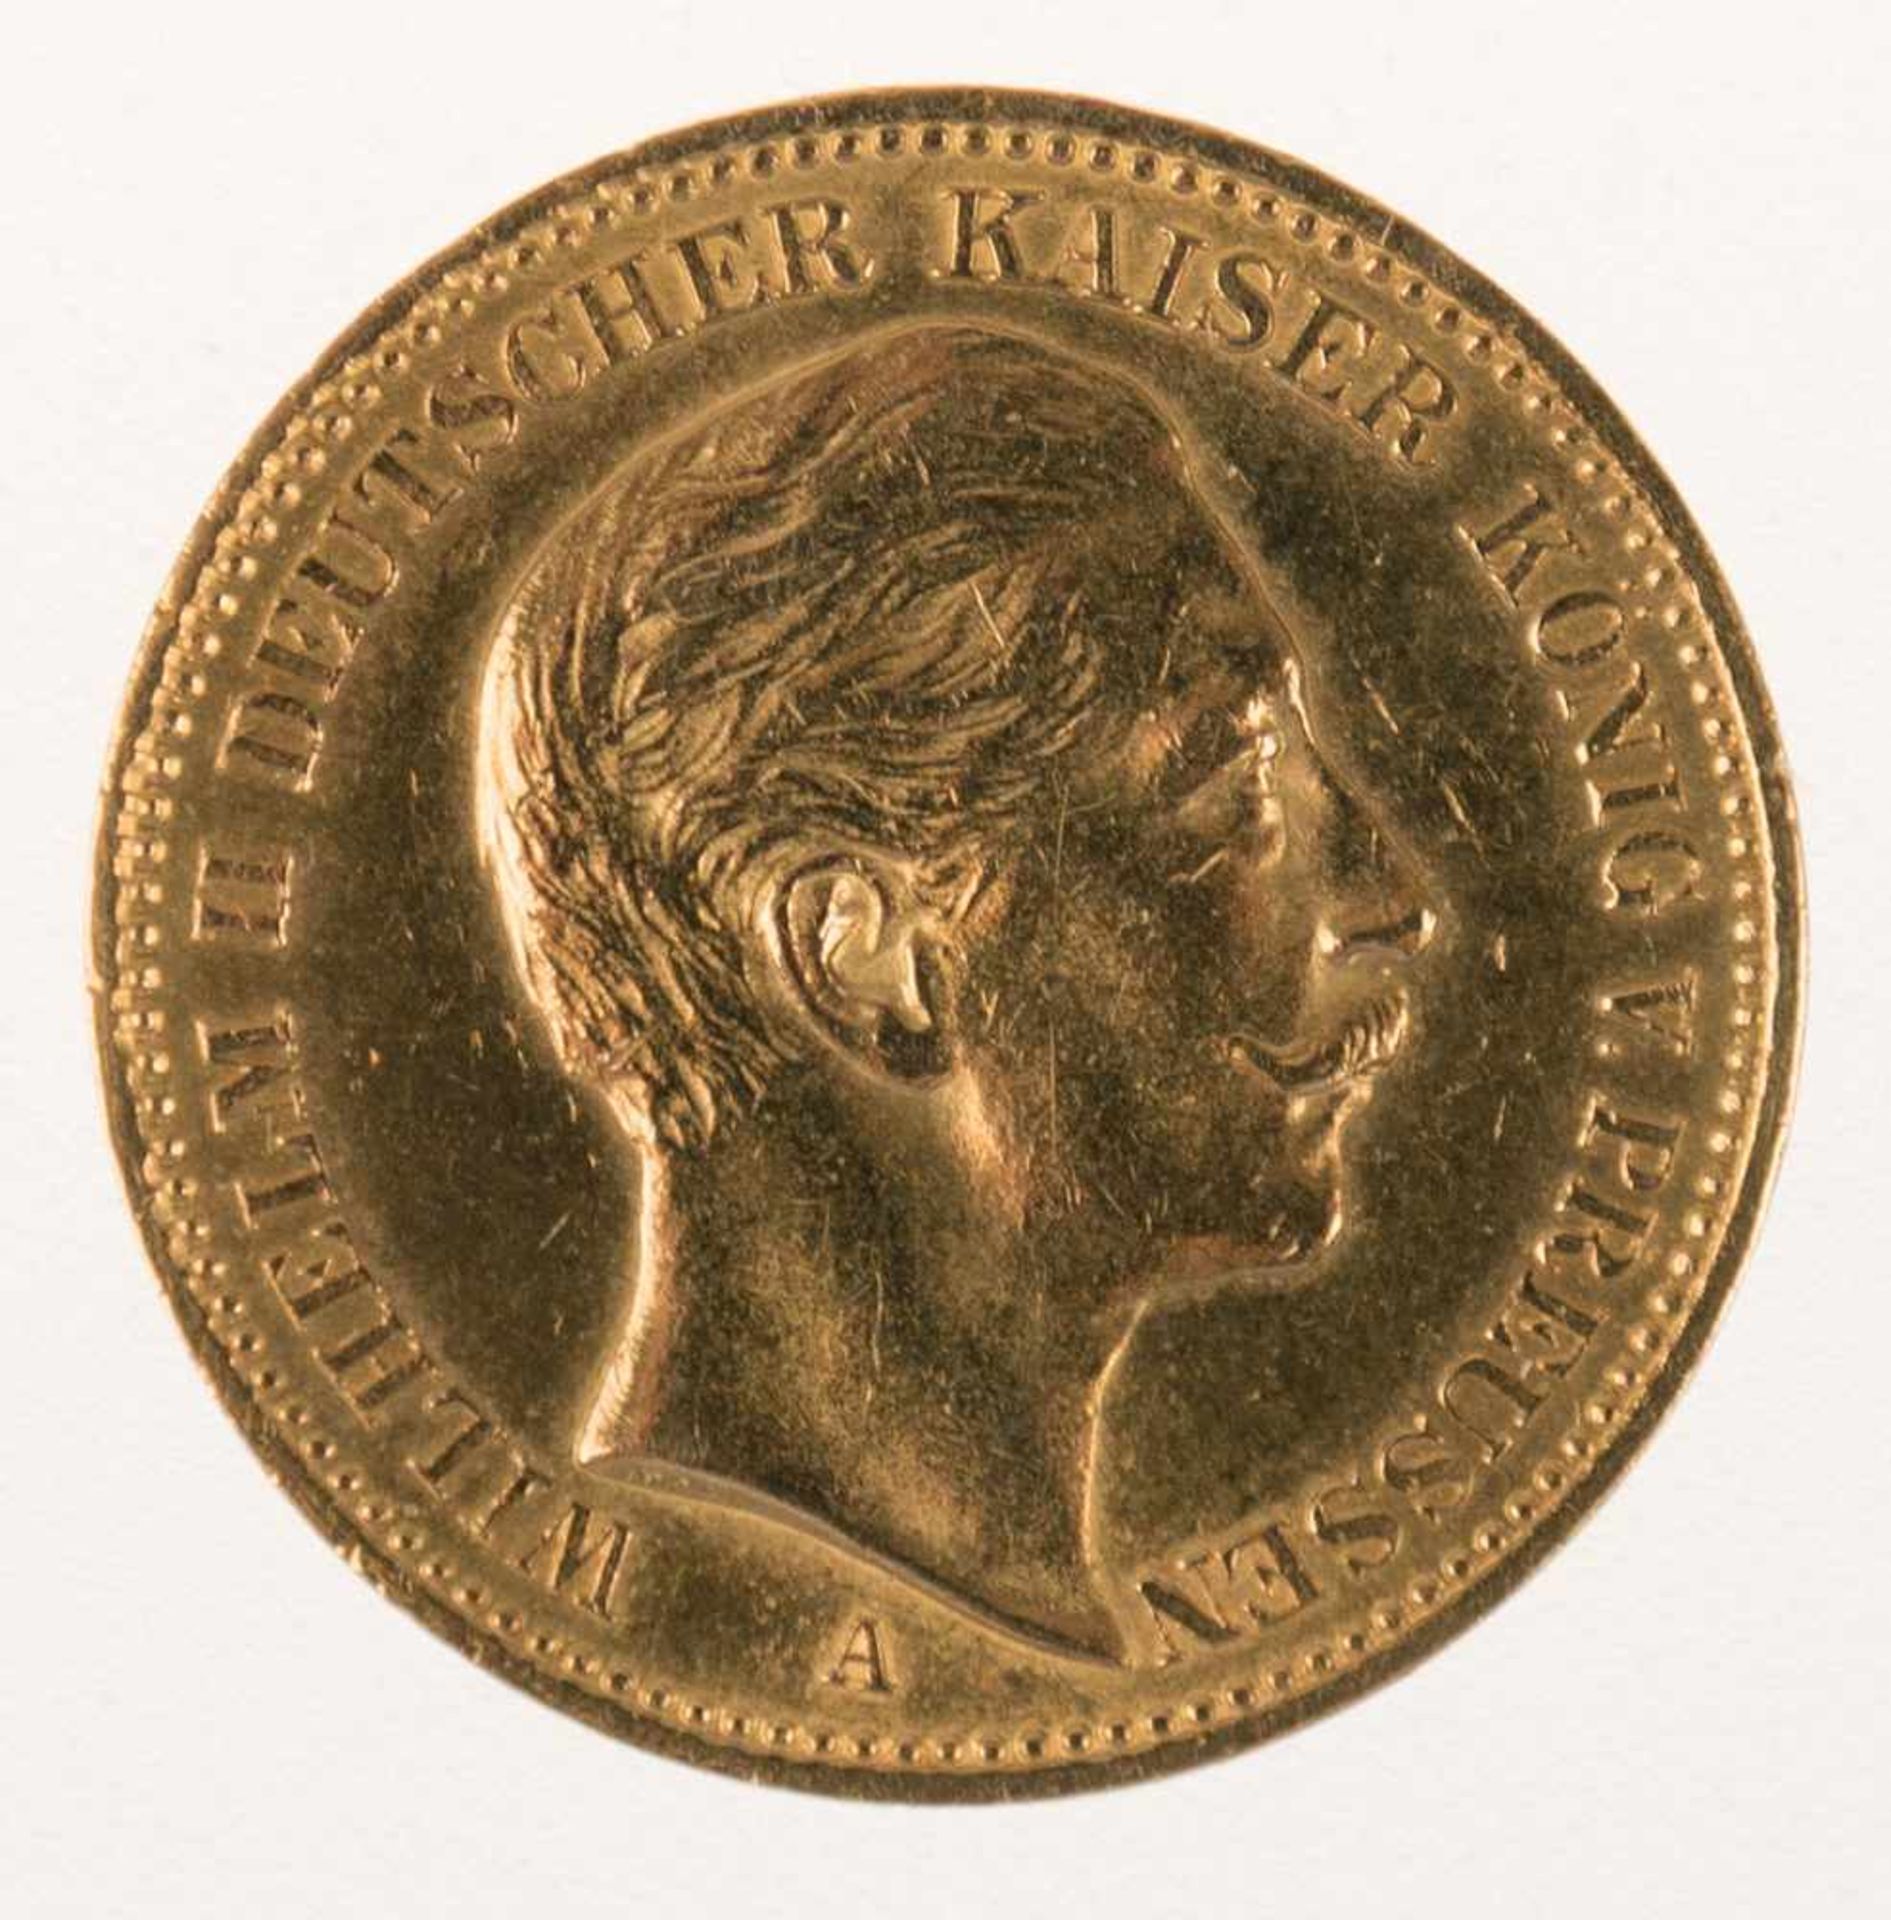 20 Mark, Gold, Deutsches Reich, 1894 A, Wilhelm II. - Image 2 of 2